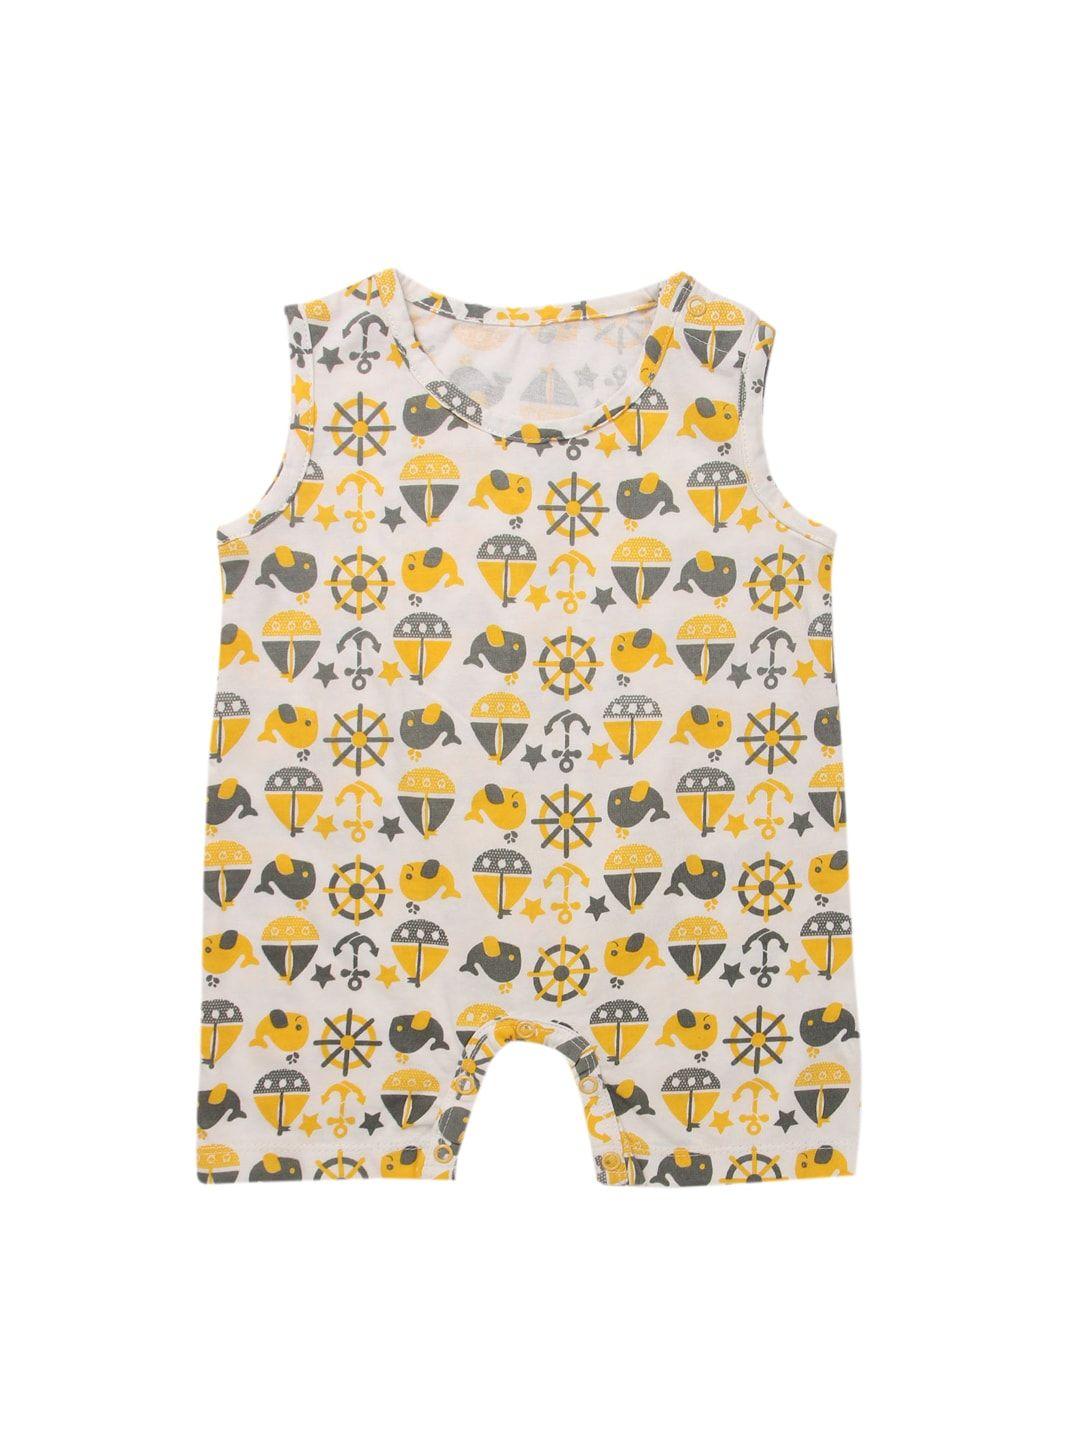 nino-bambino-infant-girls-off-white-&-yellow-printed-organic-cotton-sustainable-romper